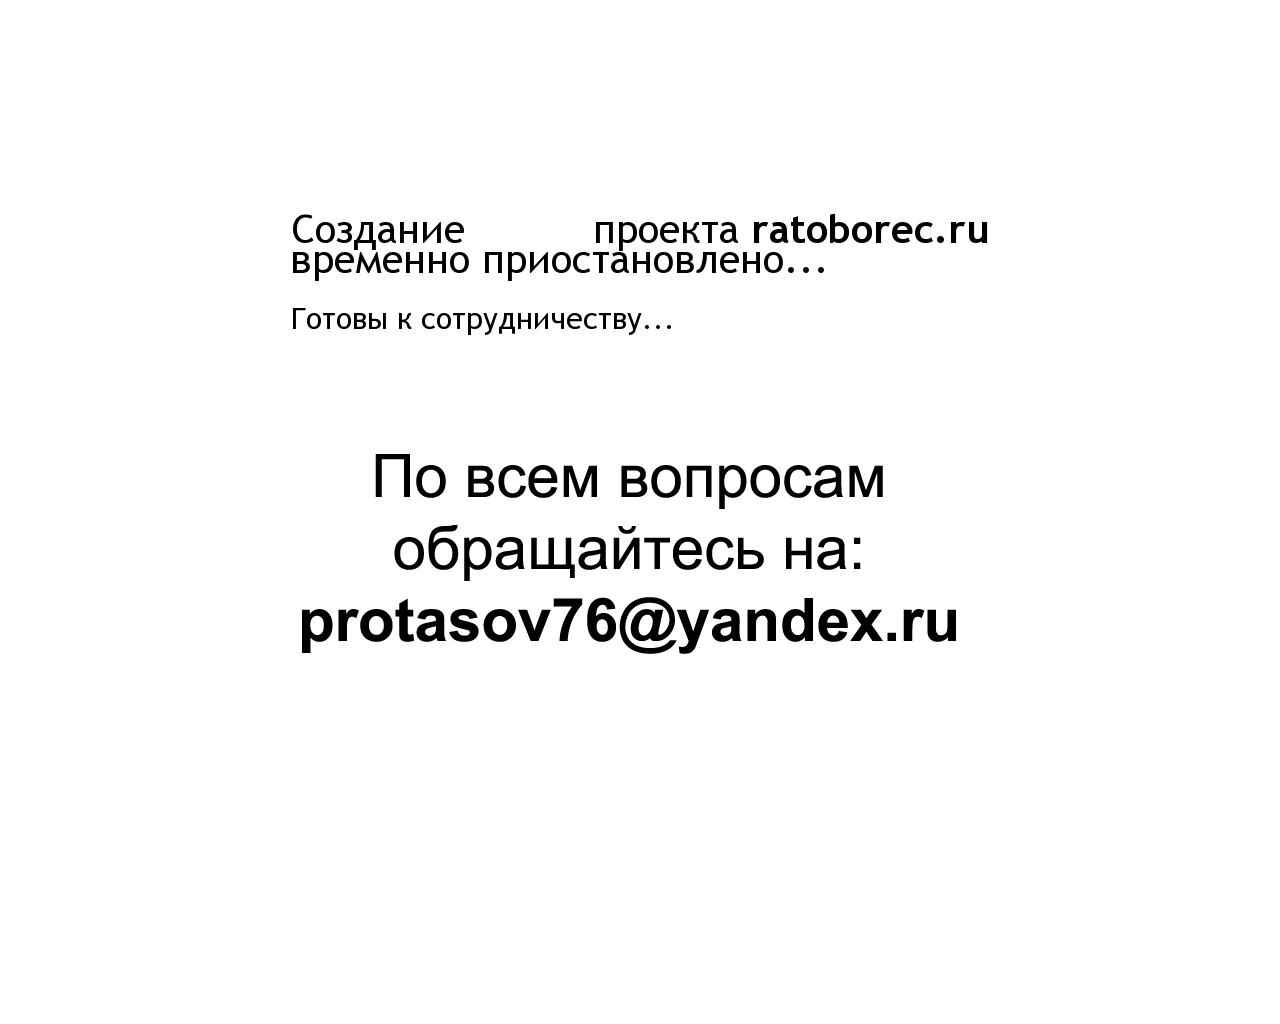 Изображение сайта ratoborec.ru в разрешении 1280x1024